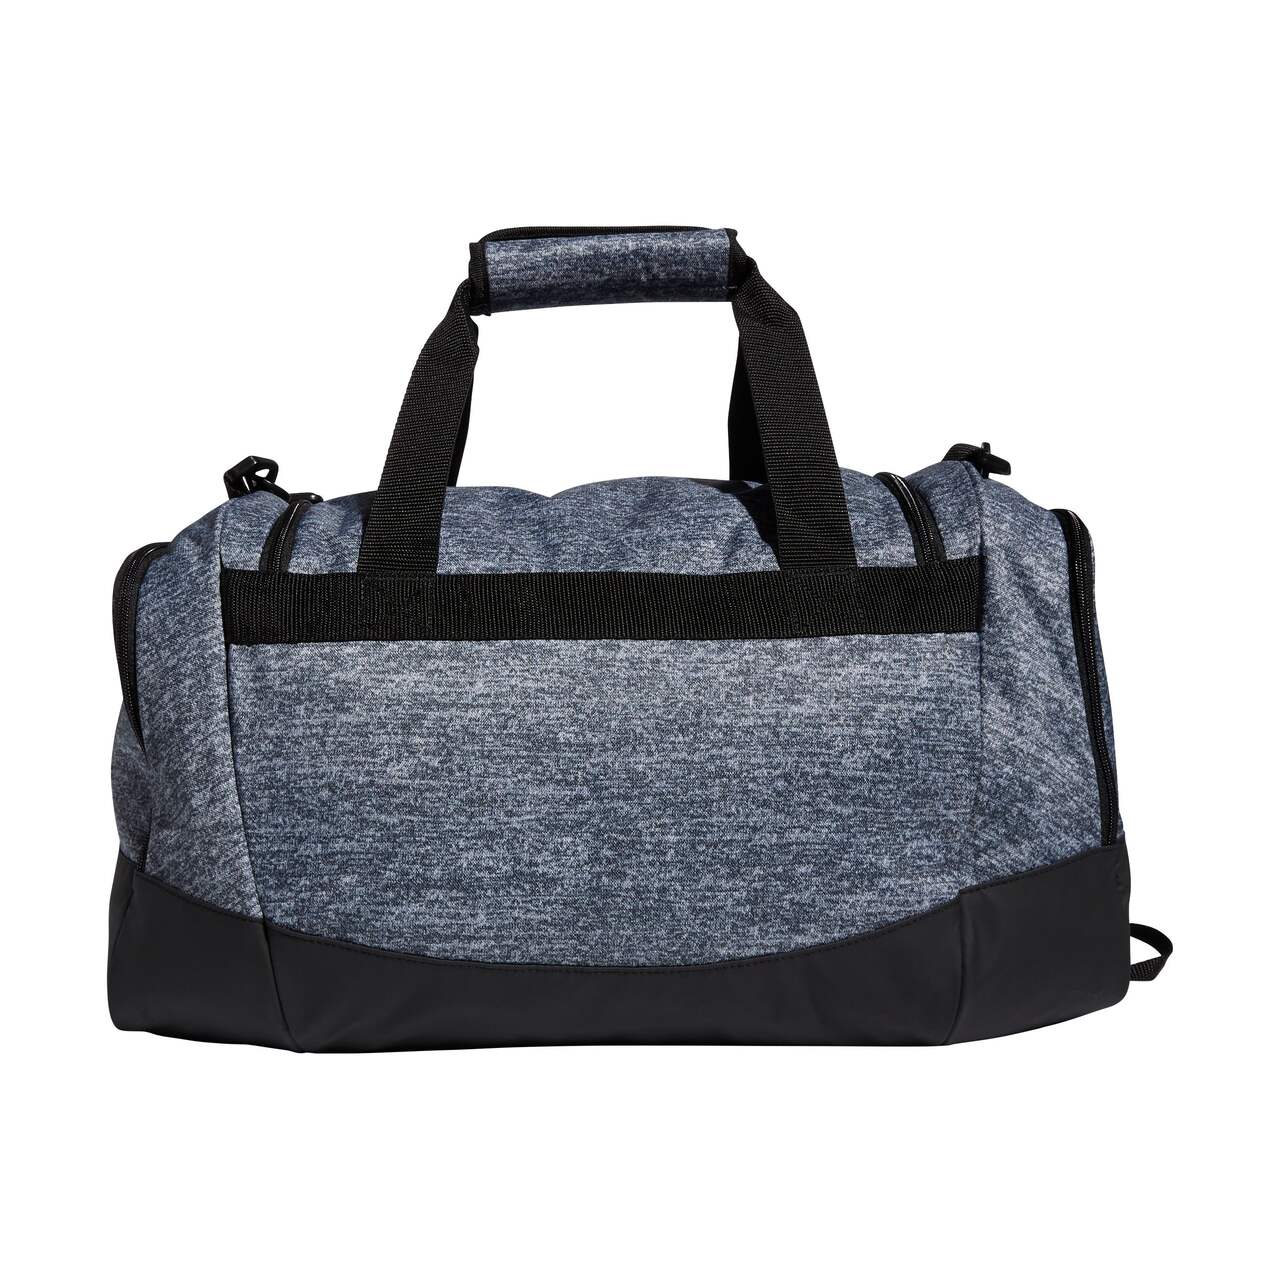 Best Gym Duffel Bag? Nike Brasilia Duffel Bag Review and Comparison vs  Adidas Defender Duffel Bag 